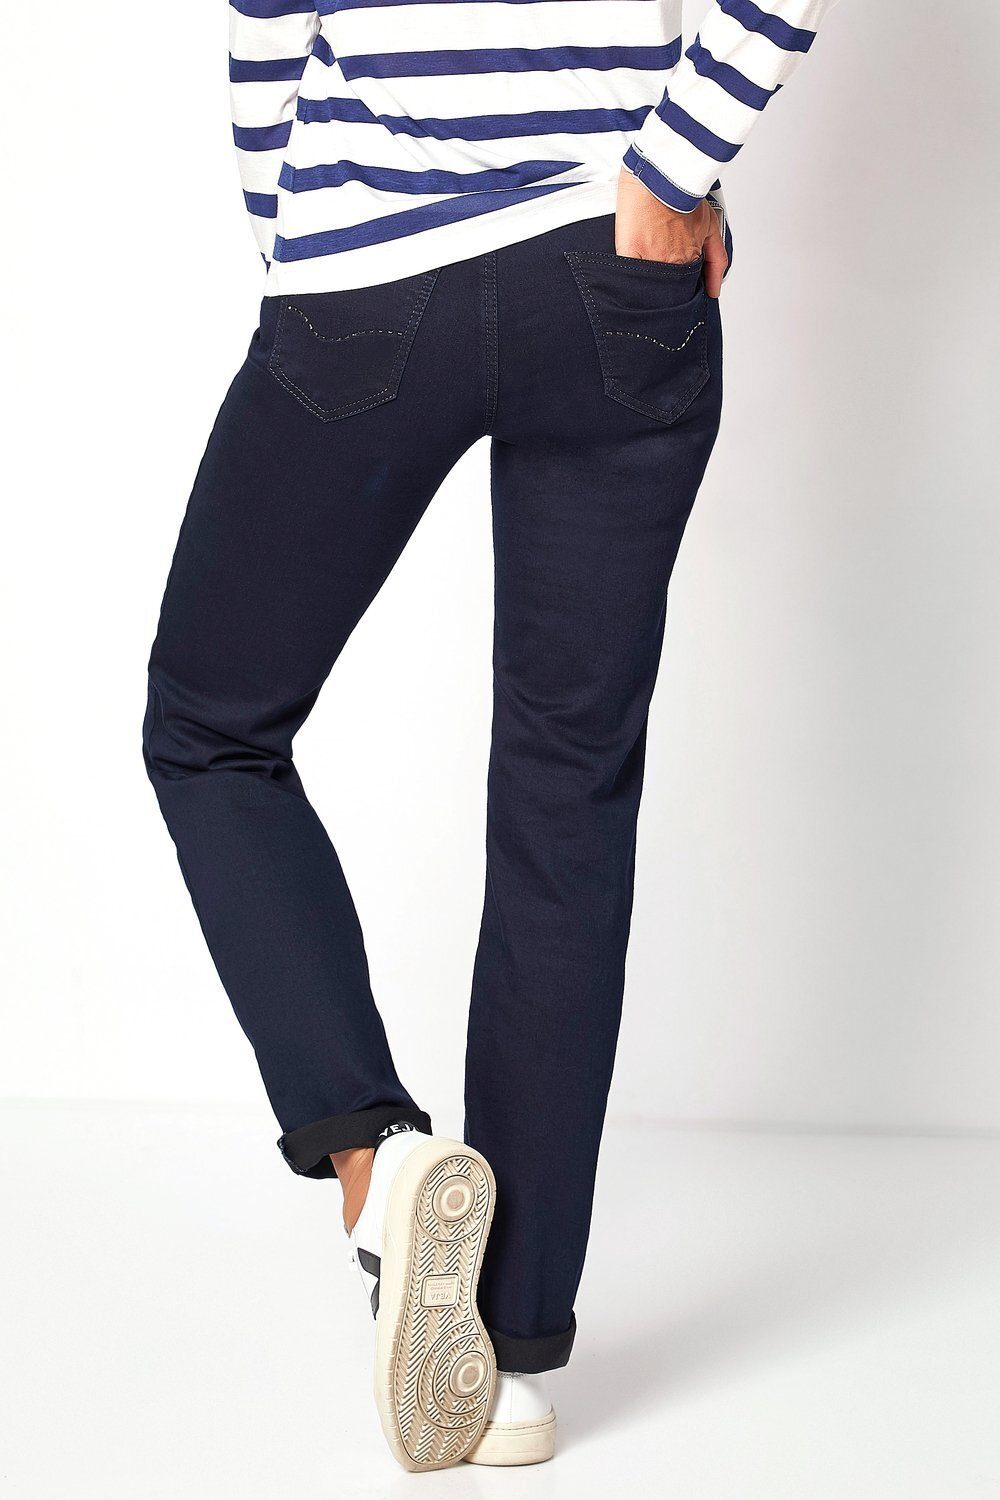 TONI 5-Pocket-Jeans Liv in Regular-Fit - dunkelblau 059